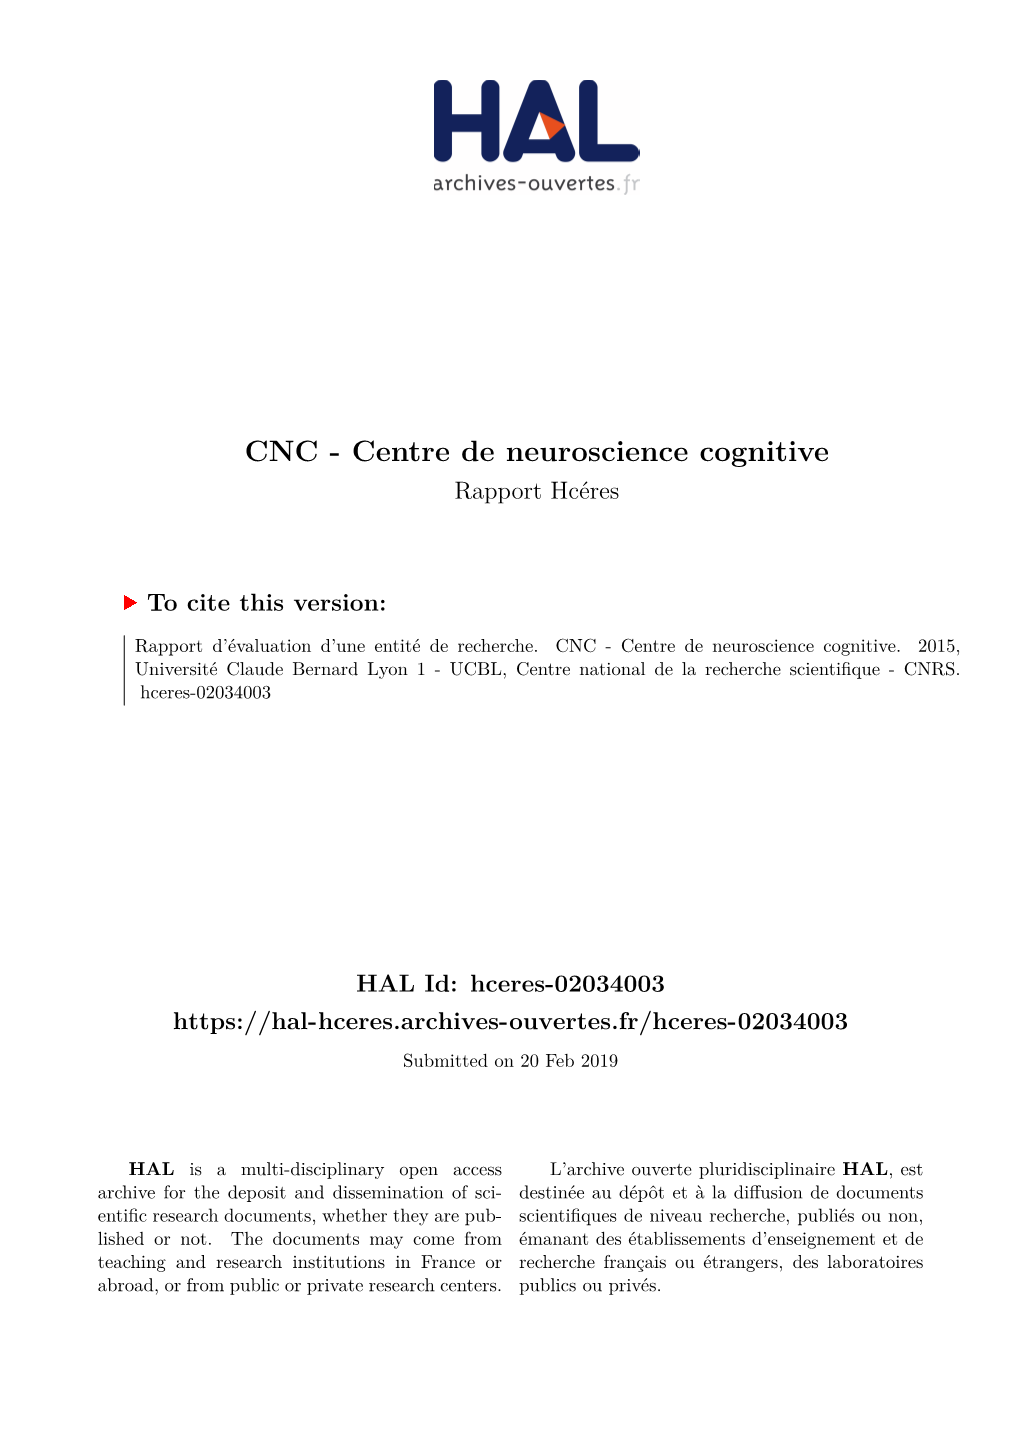 CNC - Centre De Neuroscience Cognitive Rapport Hcéres